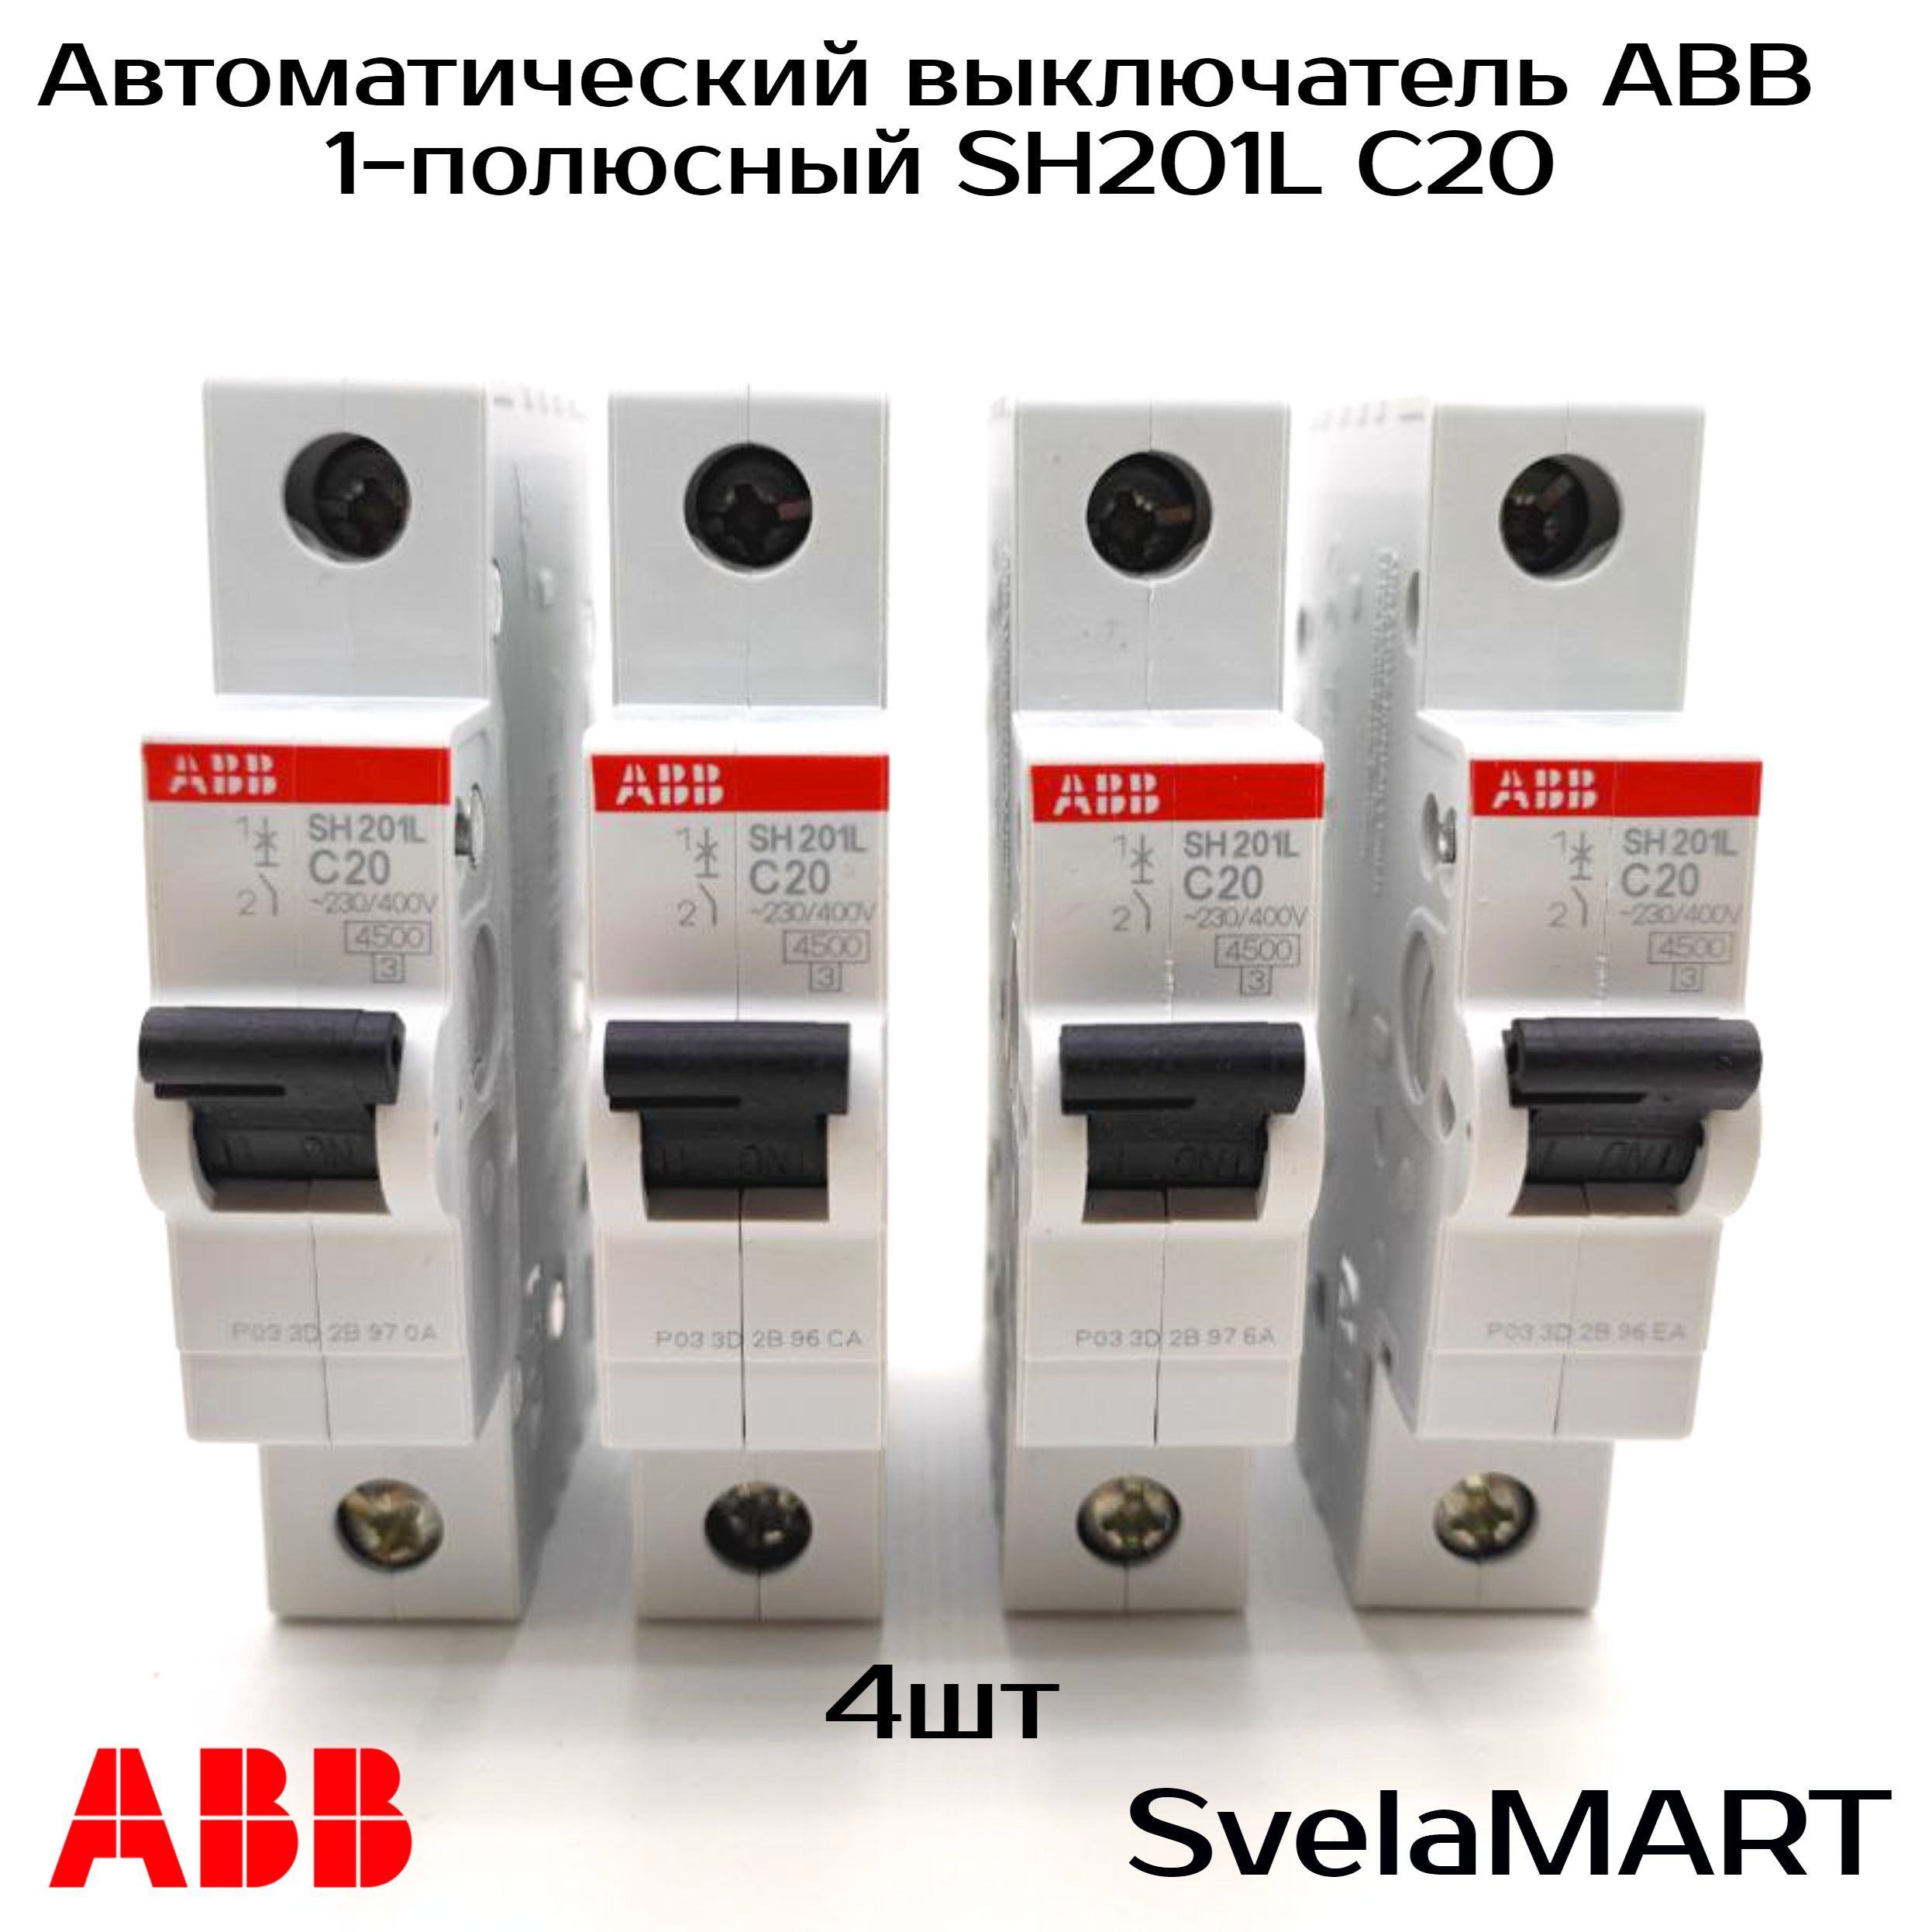 Однополюсные автоматические выключатели abb. Автоматы ABB 25 ампер в щитке. Ot40f3с ABB 40a. 20а с sh201 6.0ка sh201 c 20 ABB. Автоматические выключатели 6ка.